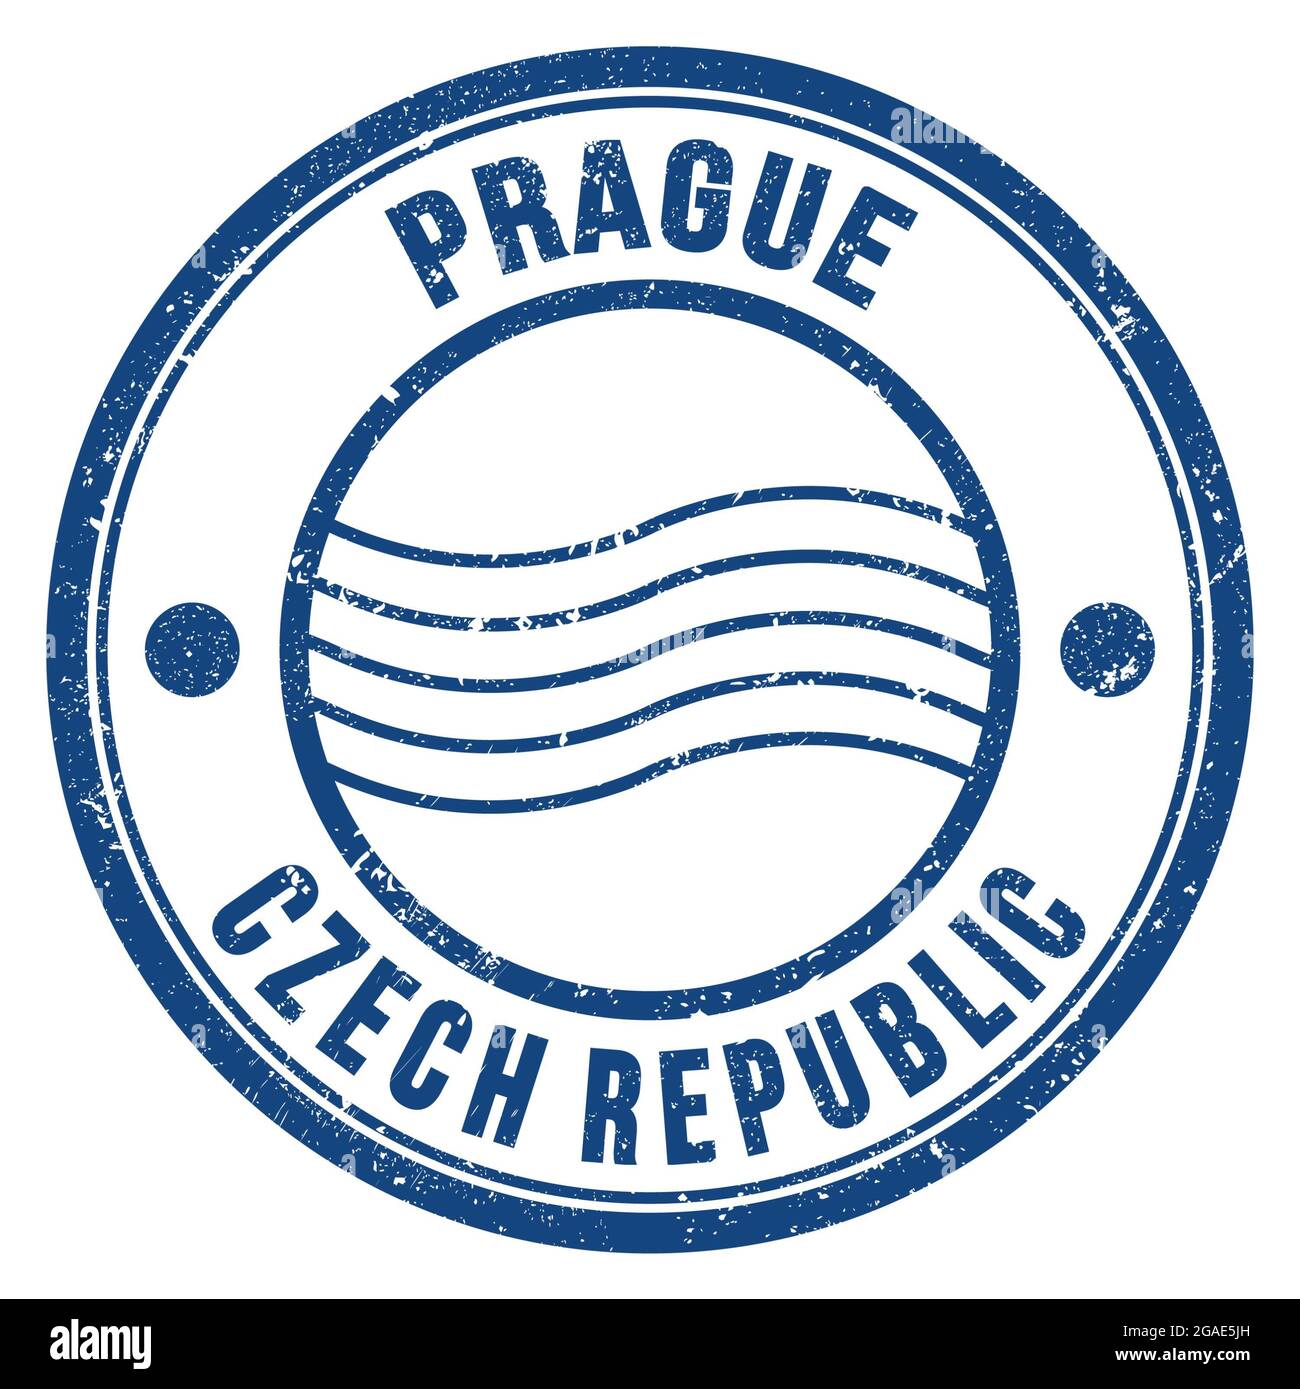 PRAGUE - RÉPUBLIQUE TCHÈQUE, mots inscrits sur le timbre postal bleu rond Banque D'Images